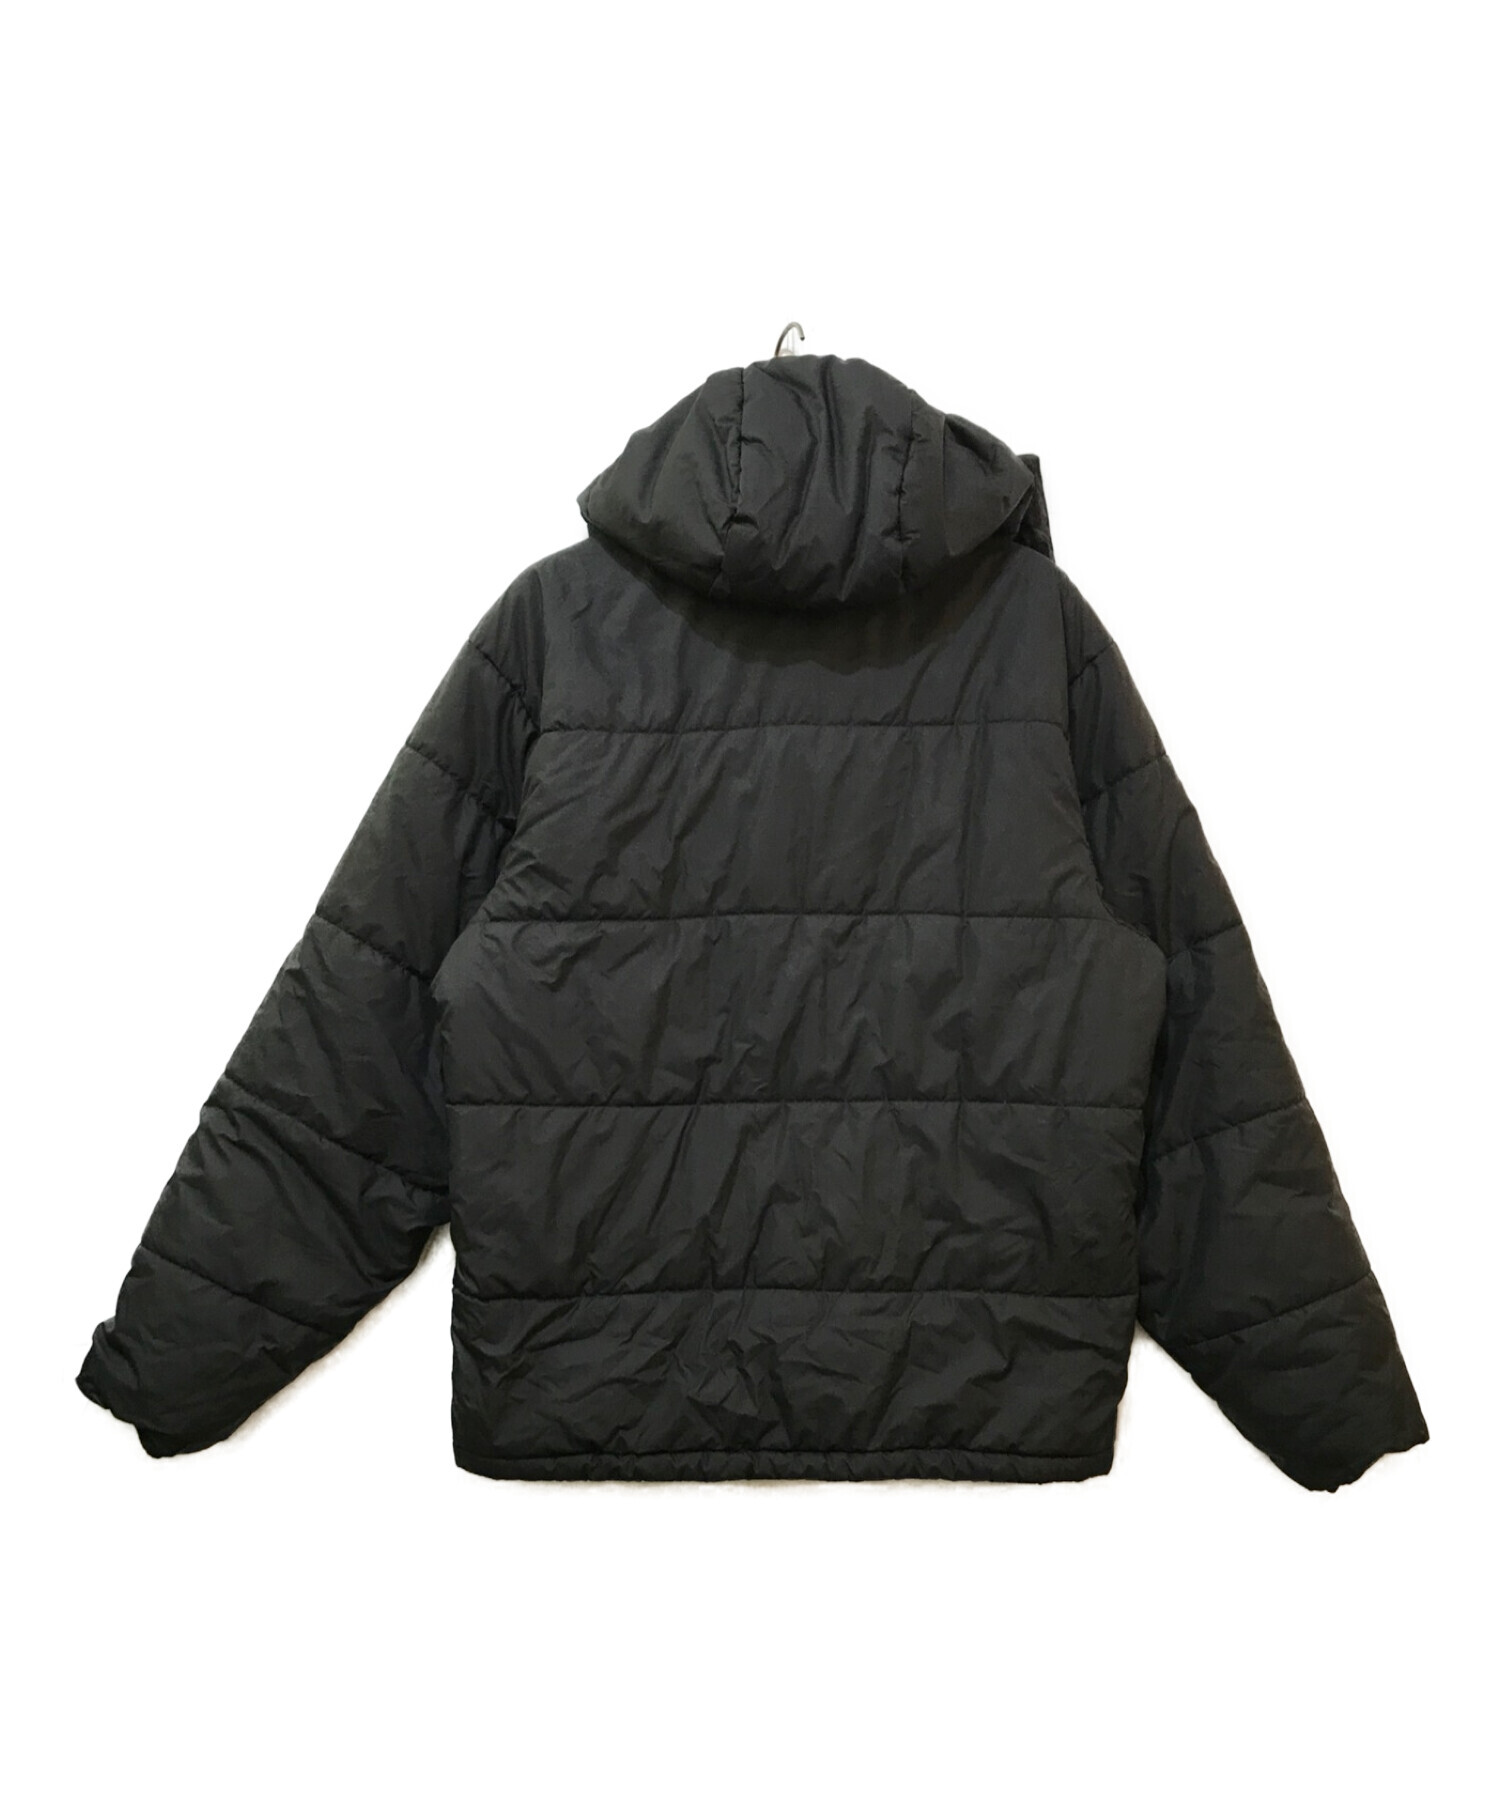 パタゴニアブラックパフジャケットサイズLで、日本サイズ3L相当、状態良